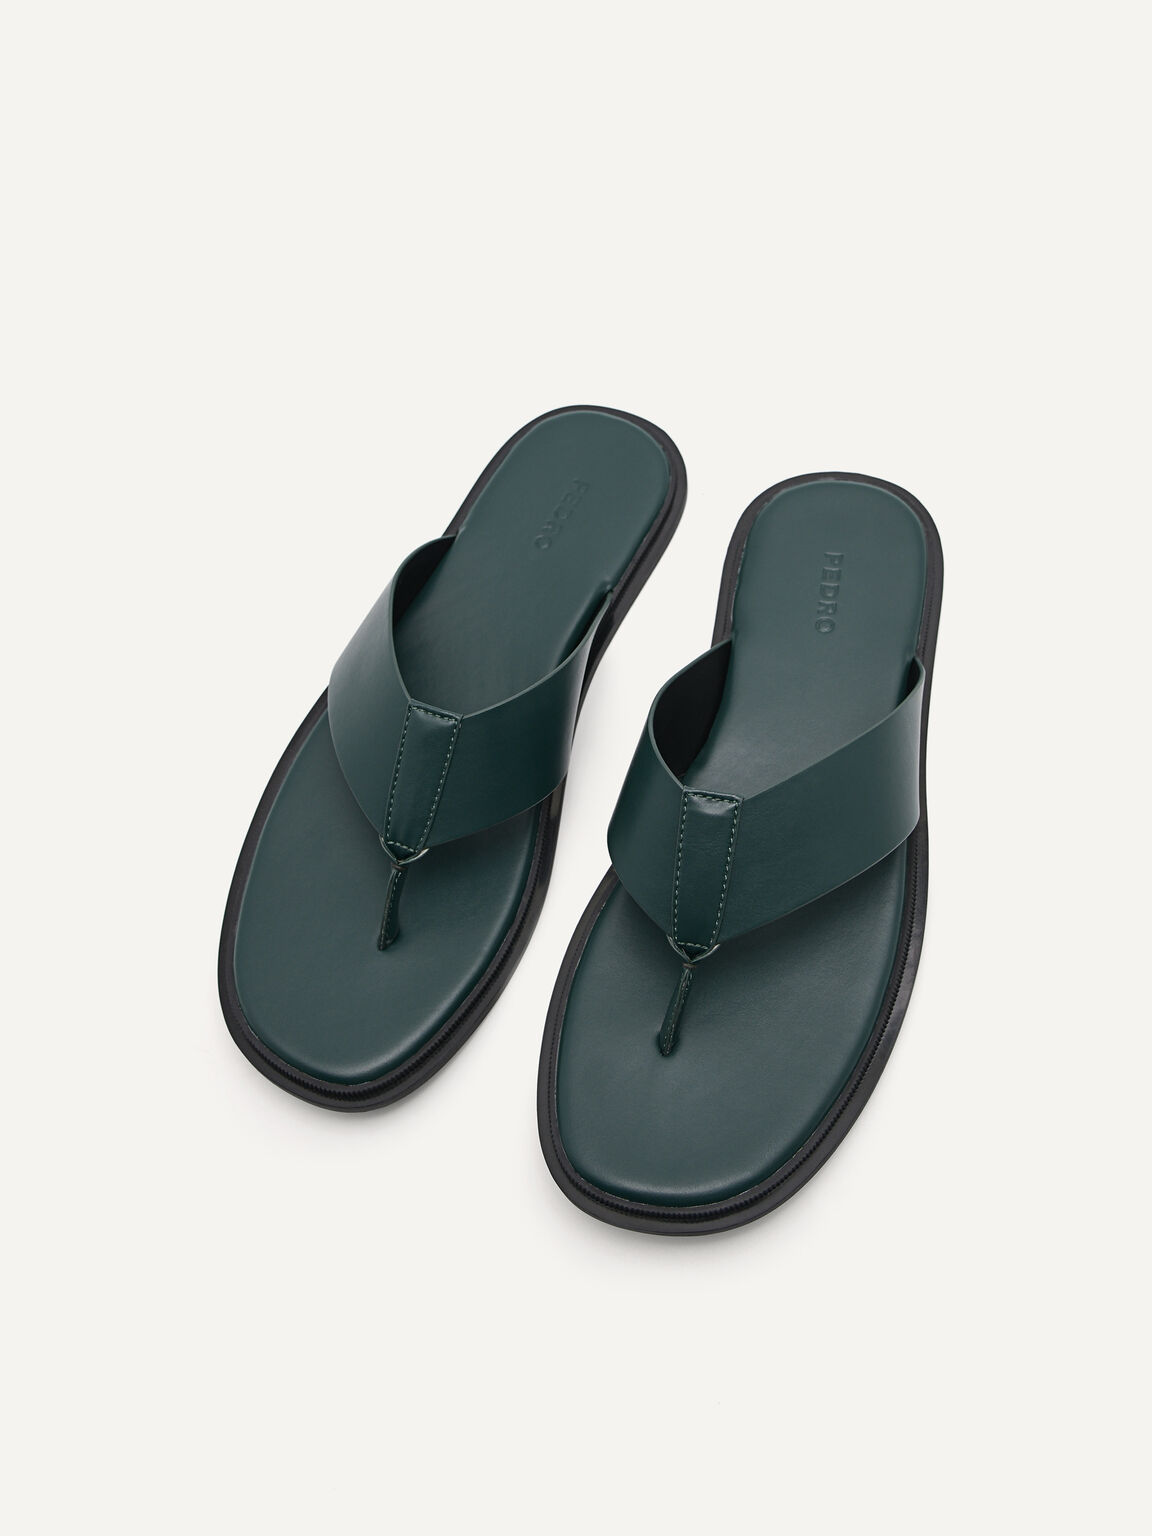 Thong Sandals, Dark Green